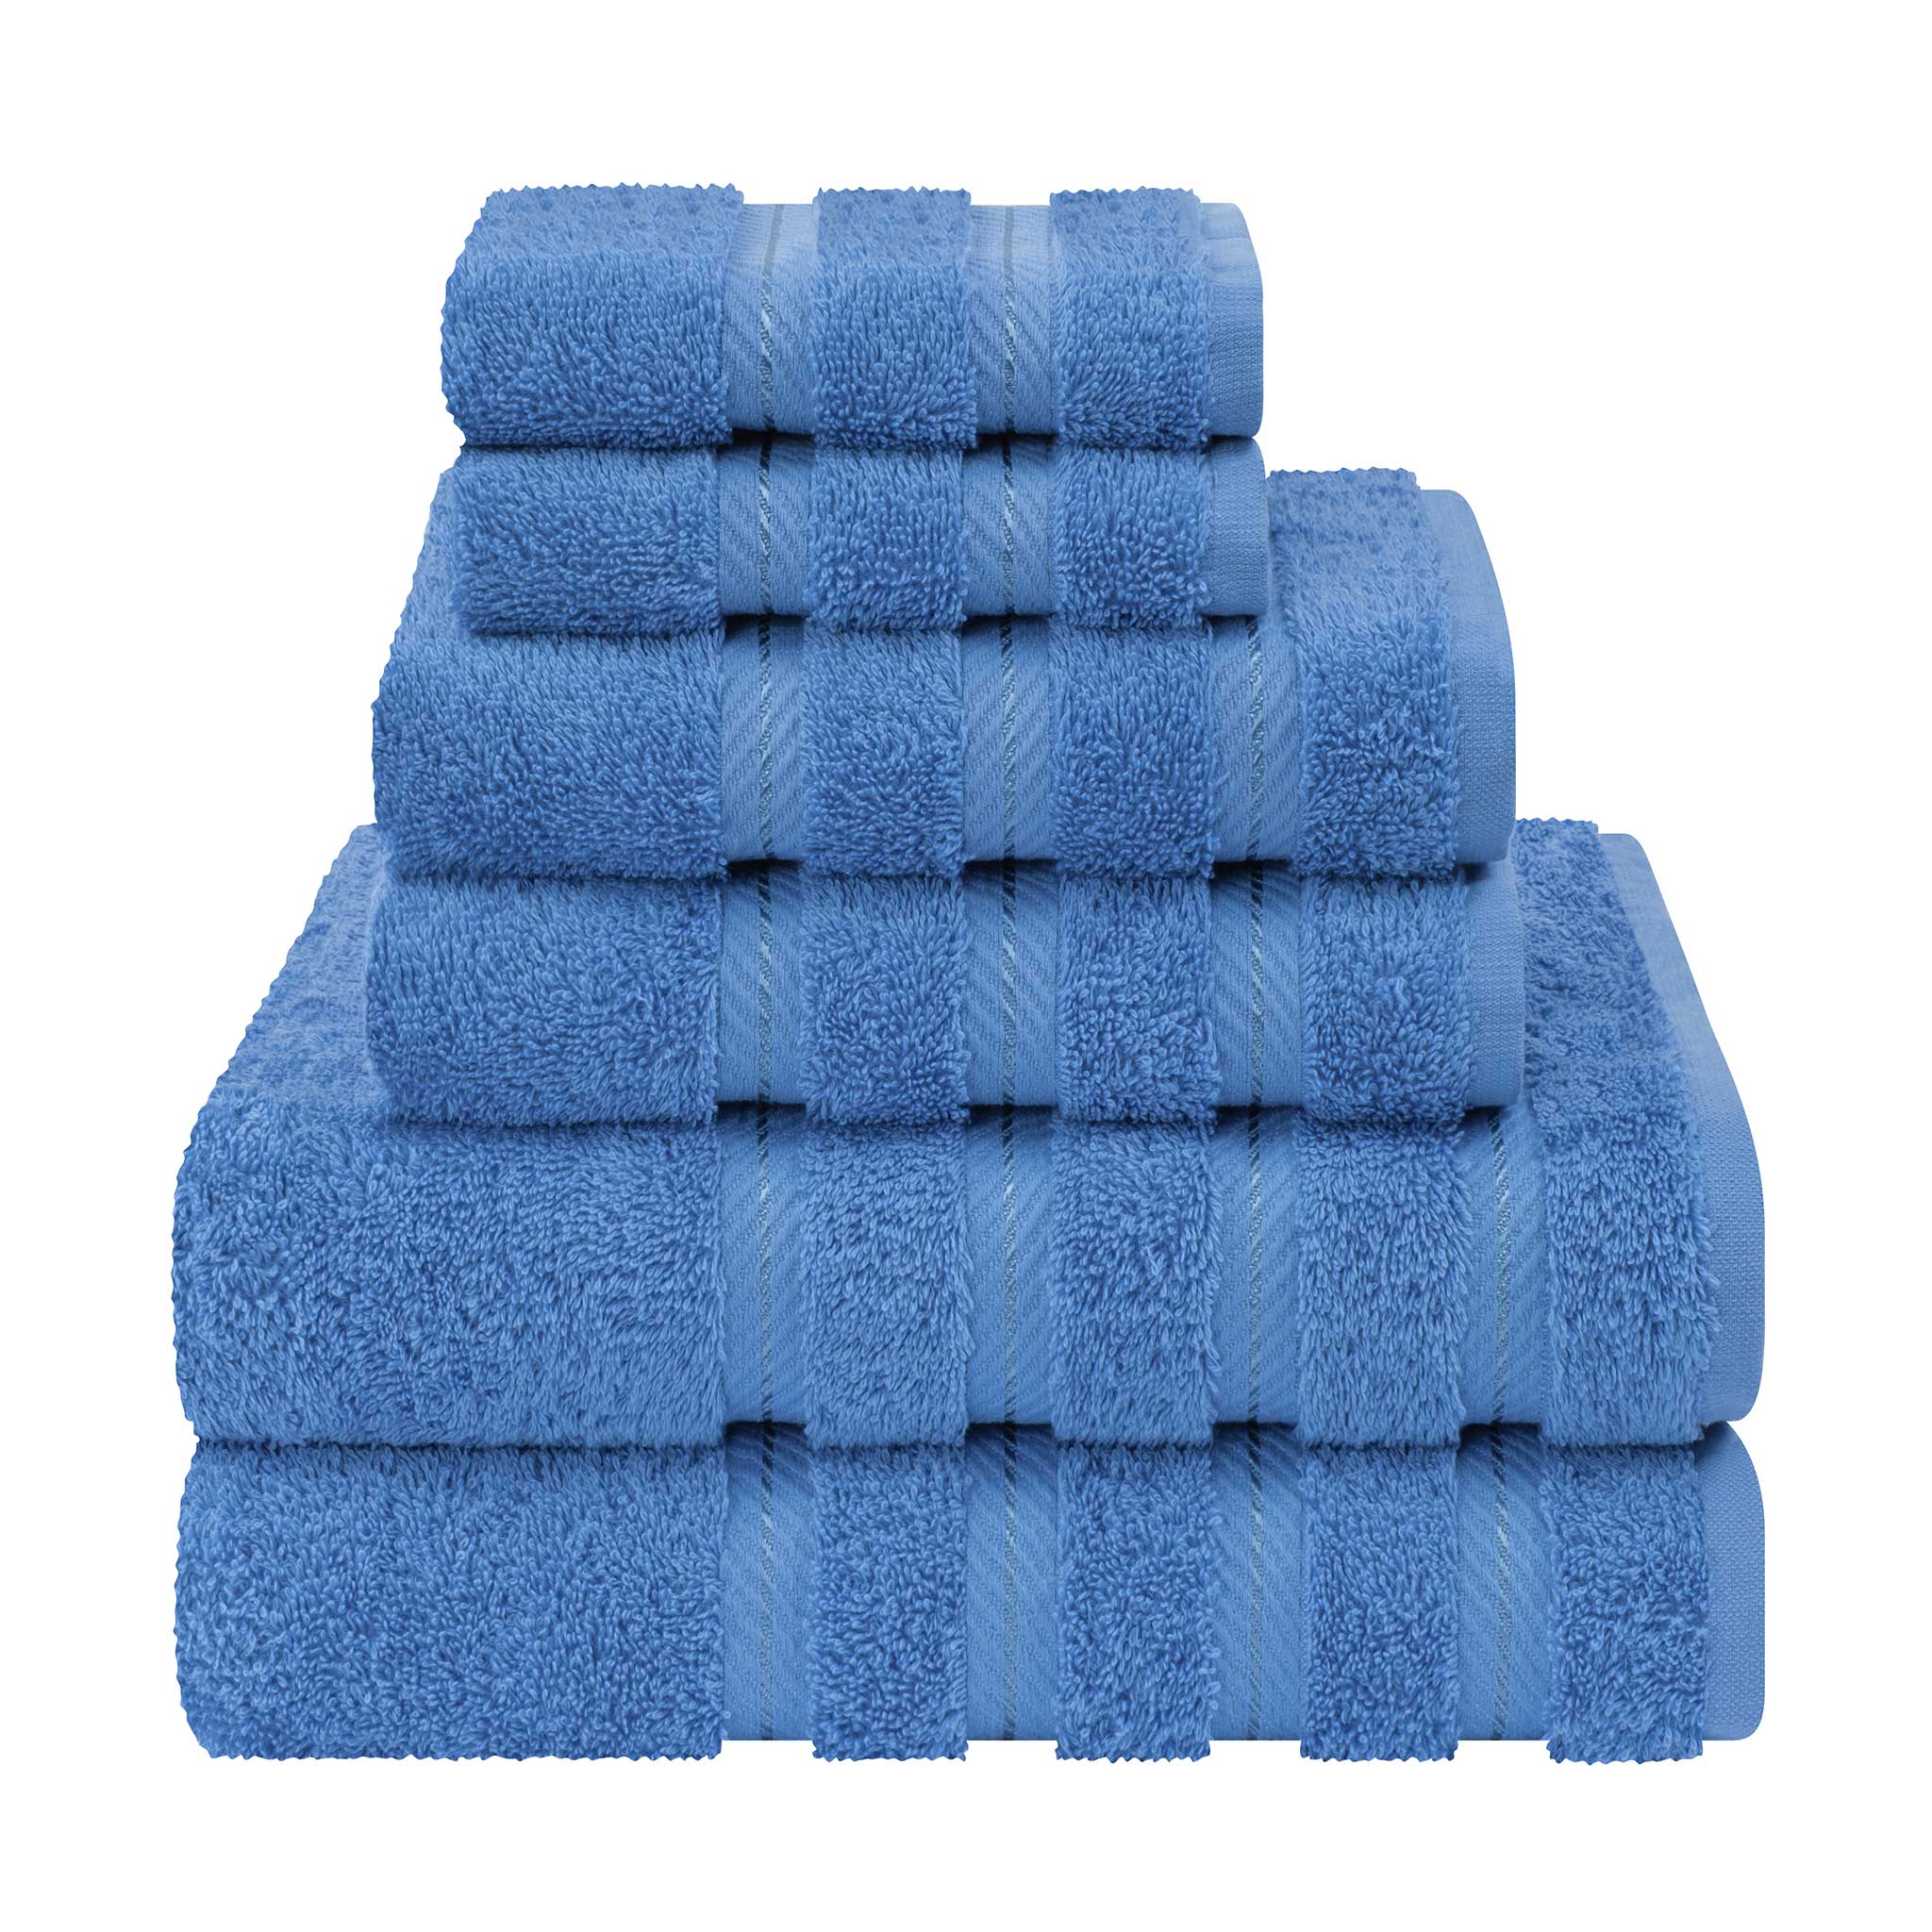 American Soft Linen - 6 Piece Turkish Cotton Bath Towel Set - Electric-Blue - 1